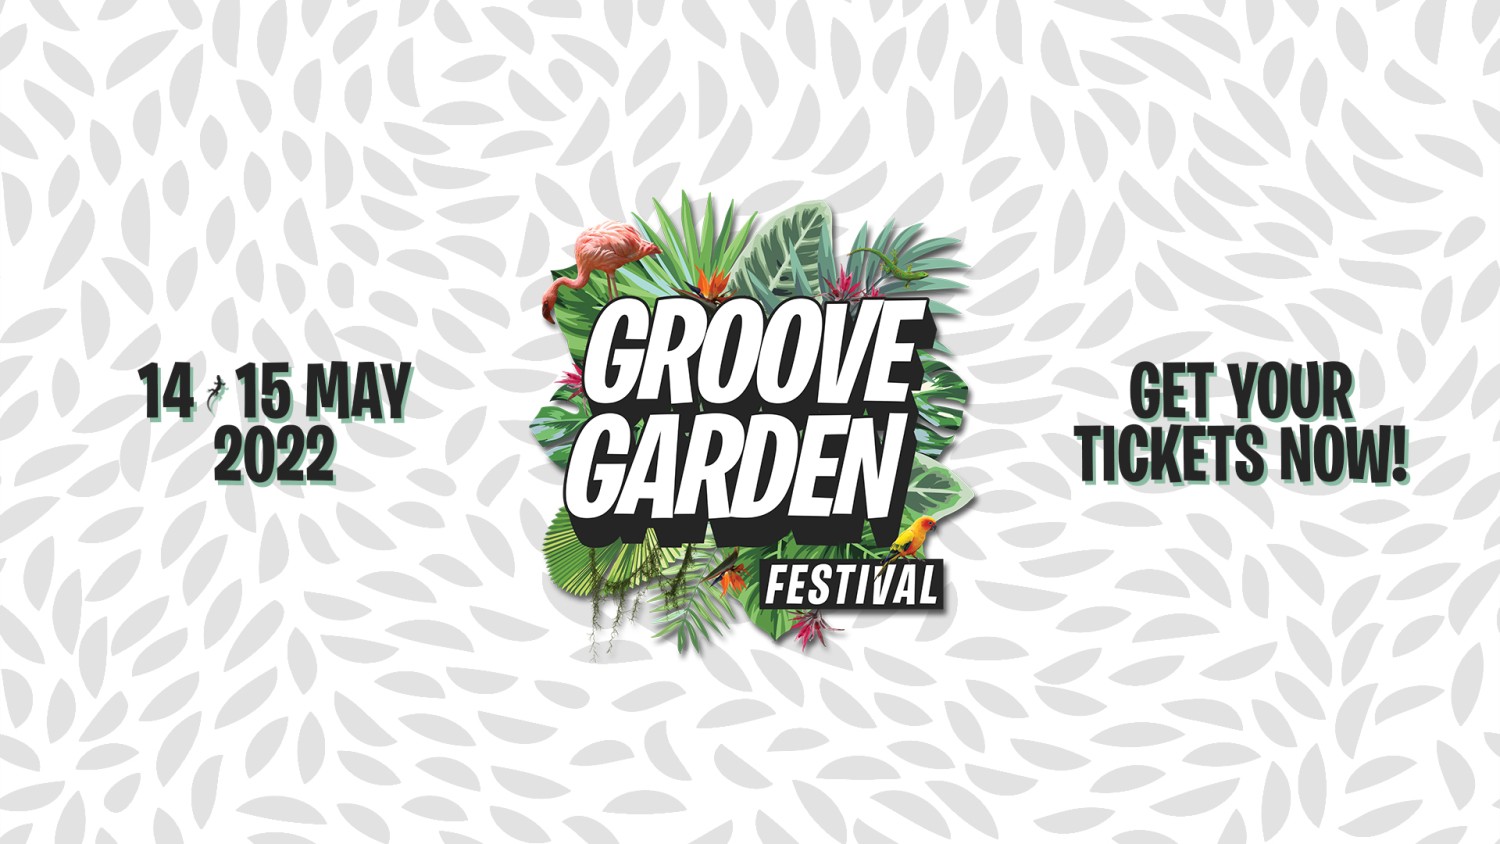 Groove Garden Festival 2022